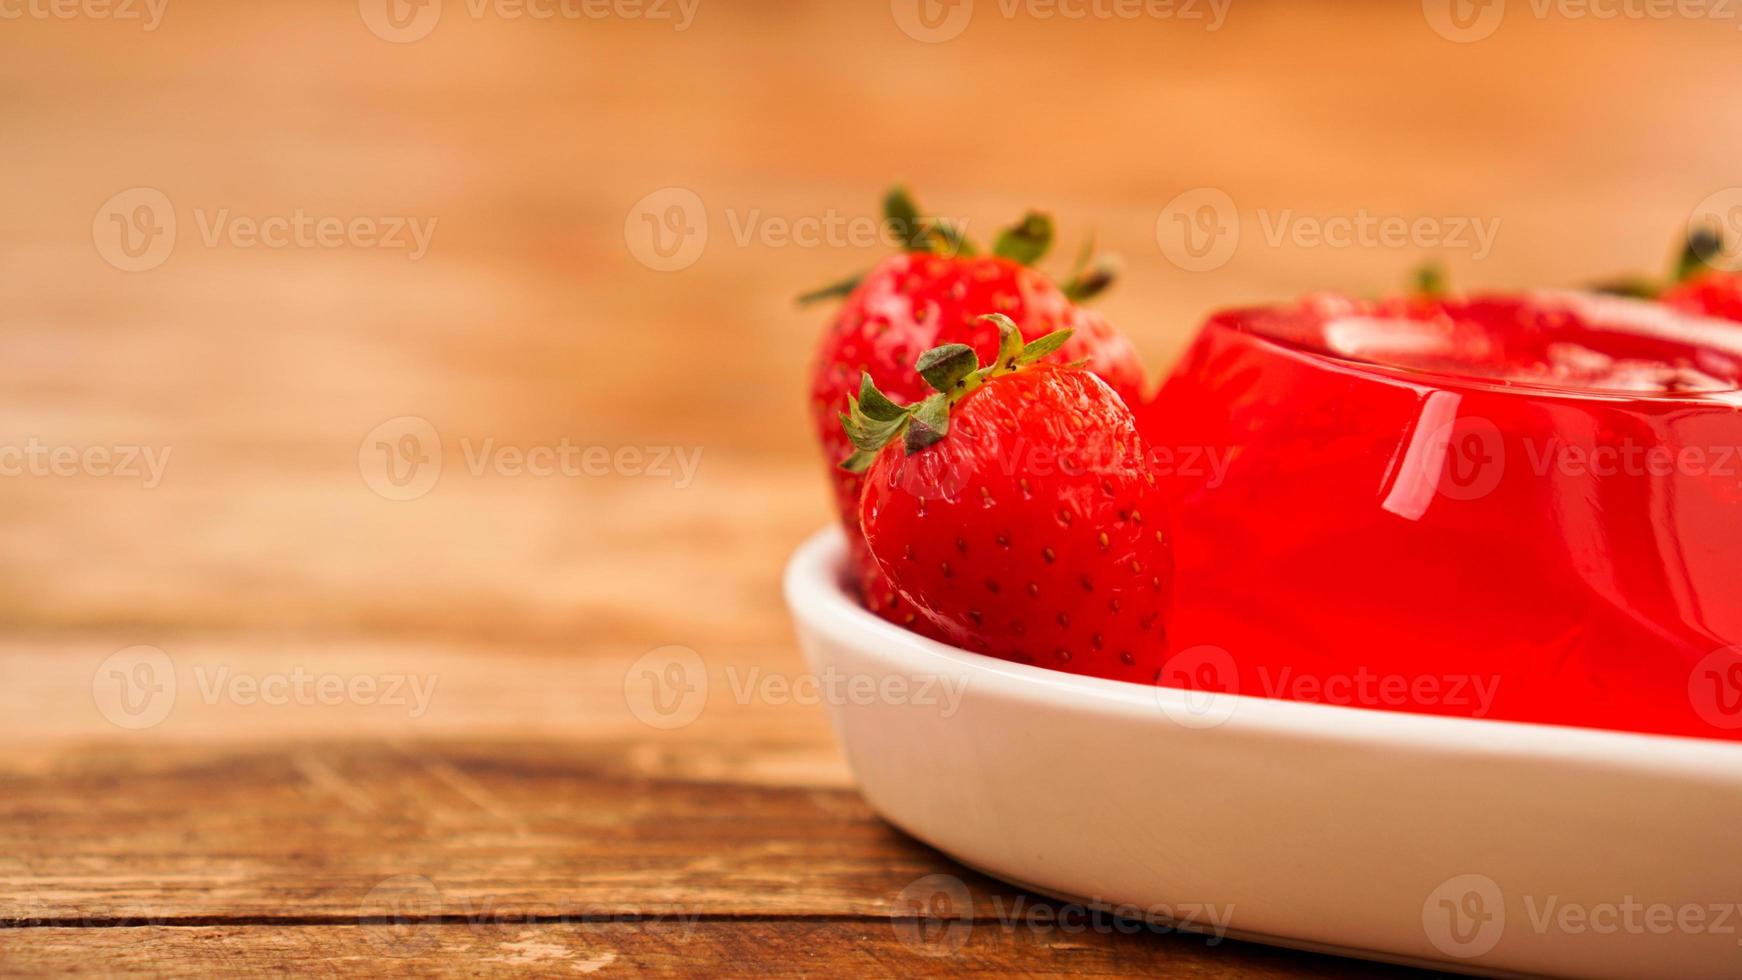 gelée de fraise rouge avec des baies sur une plaque blanche photo